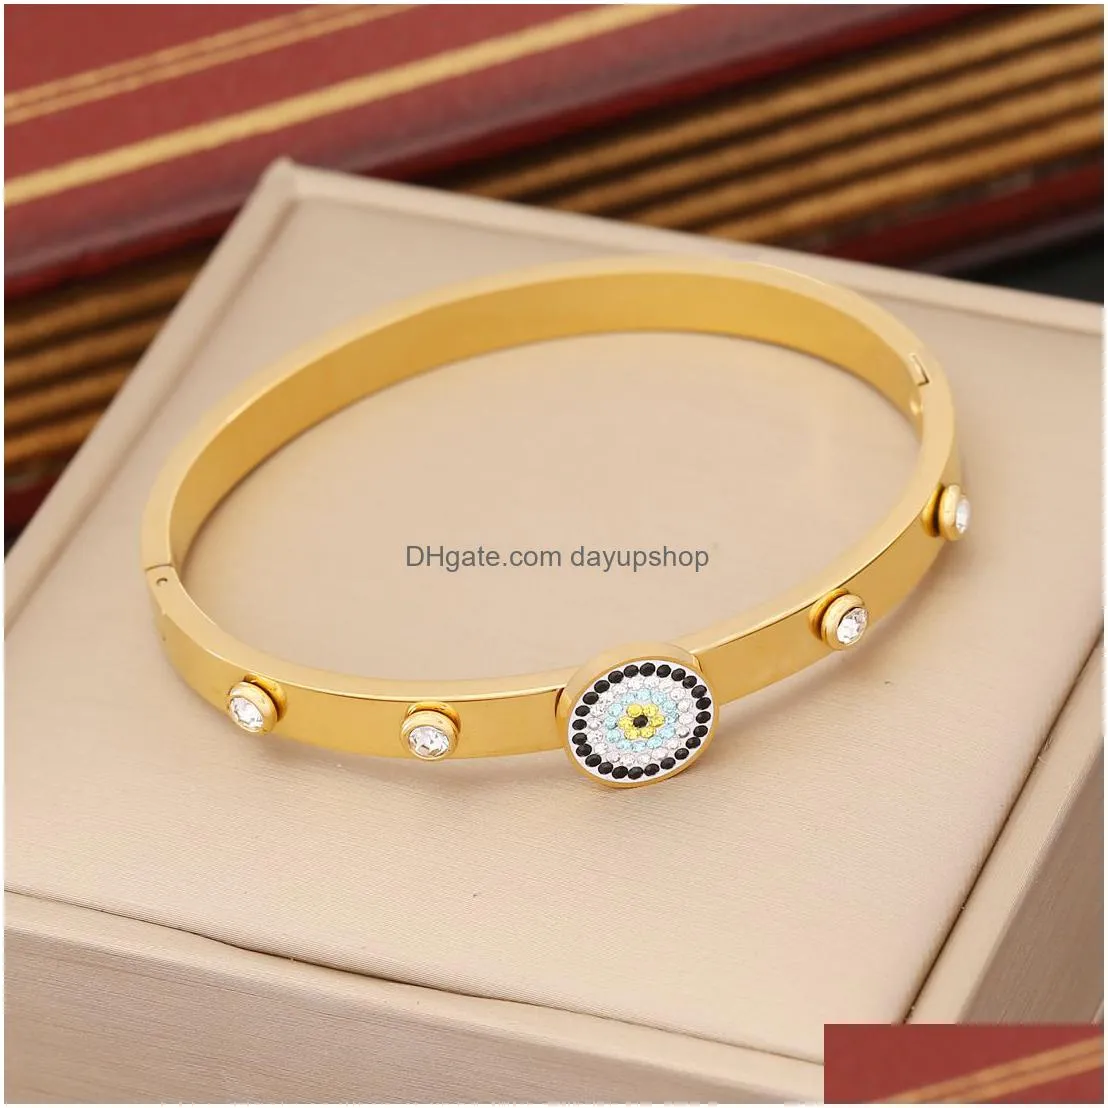 luxury brand 18k gold evil eye clover bangle ins style stainless steel bracelet for women gift